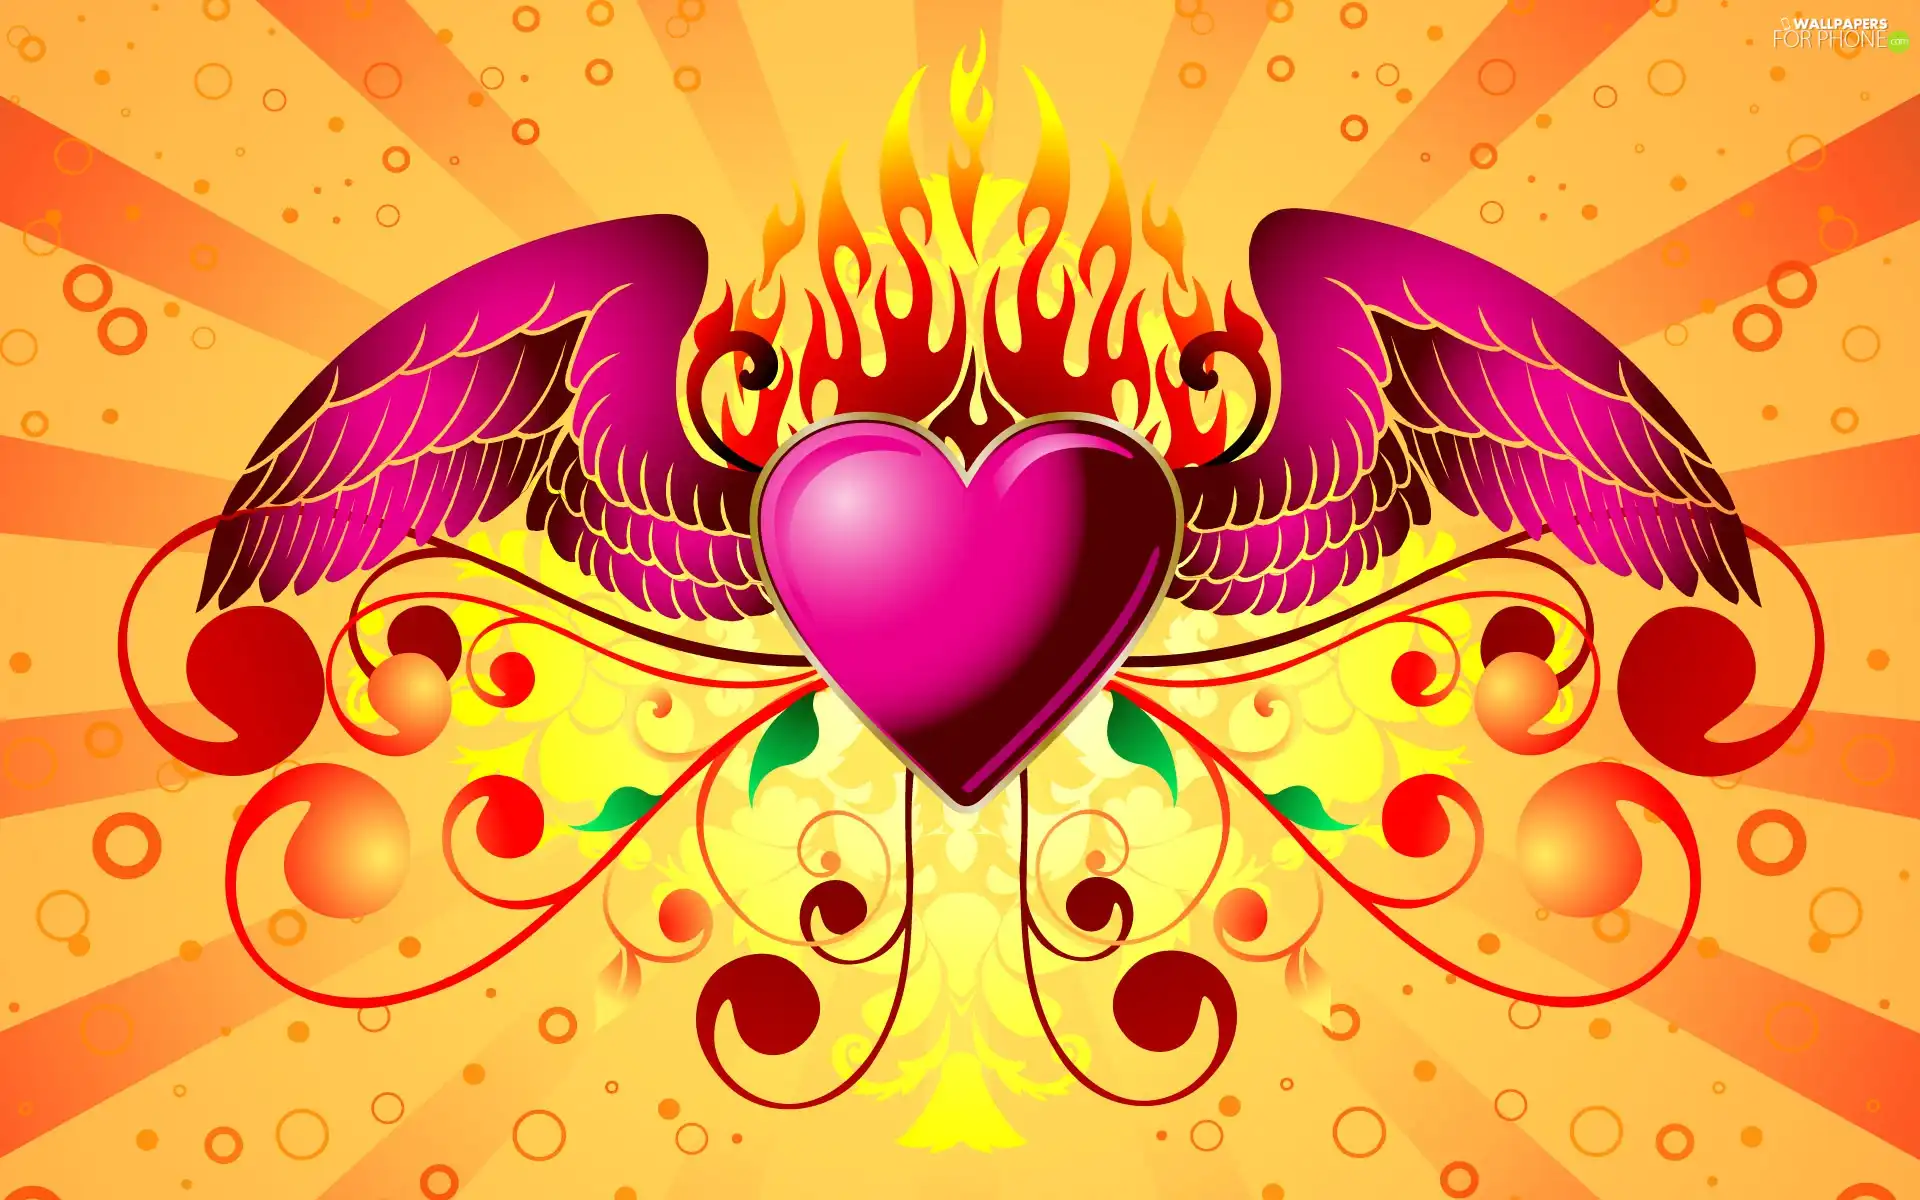 wings, Heart, Big Fire